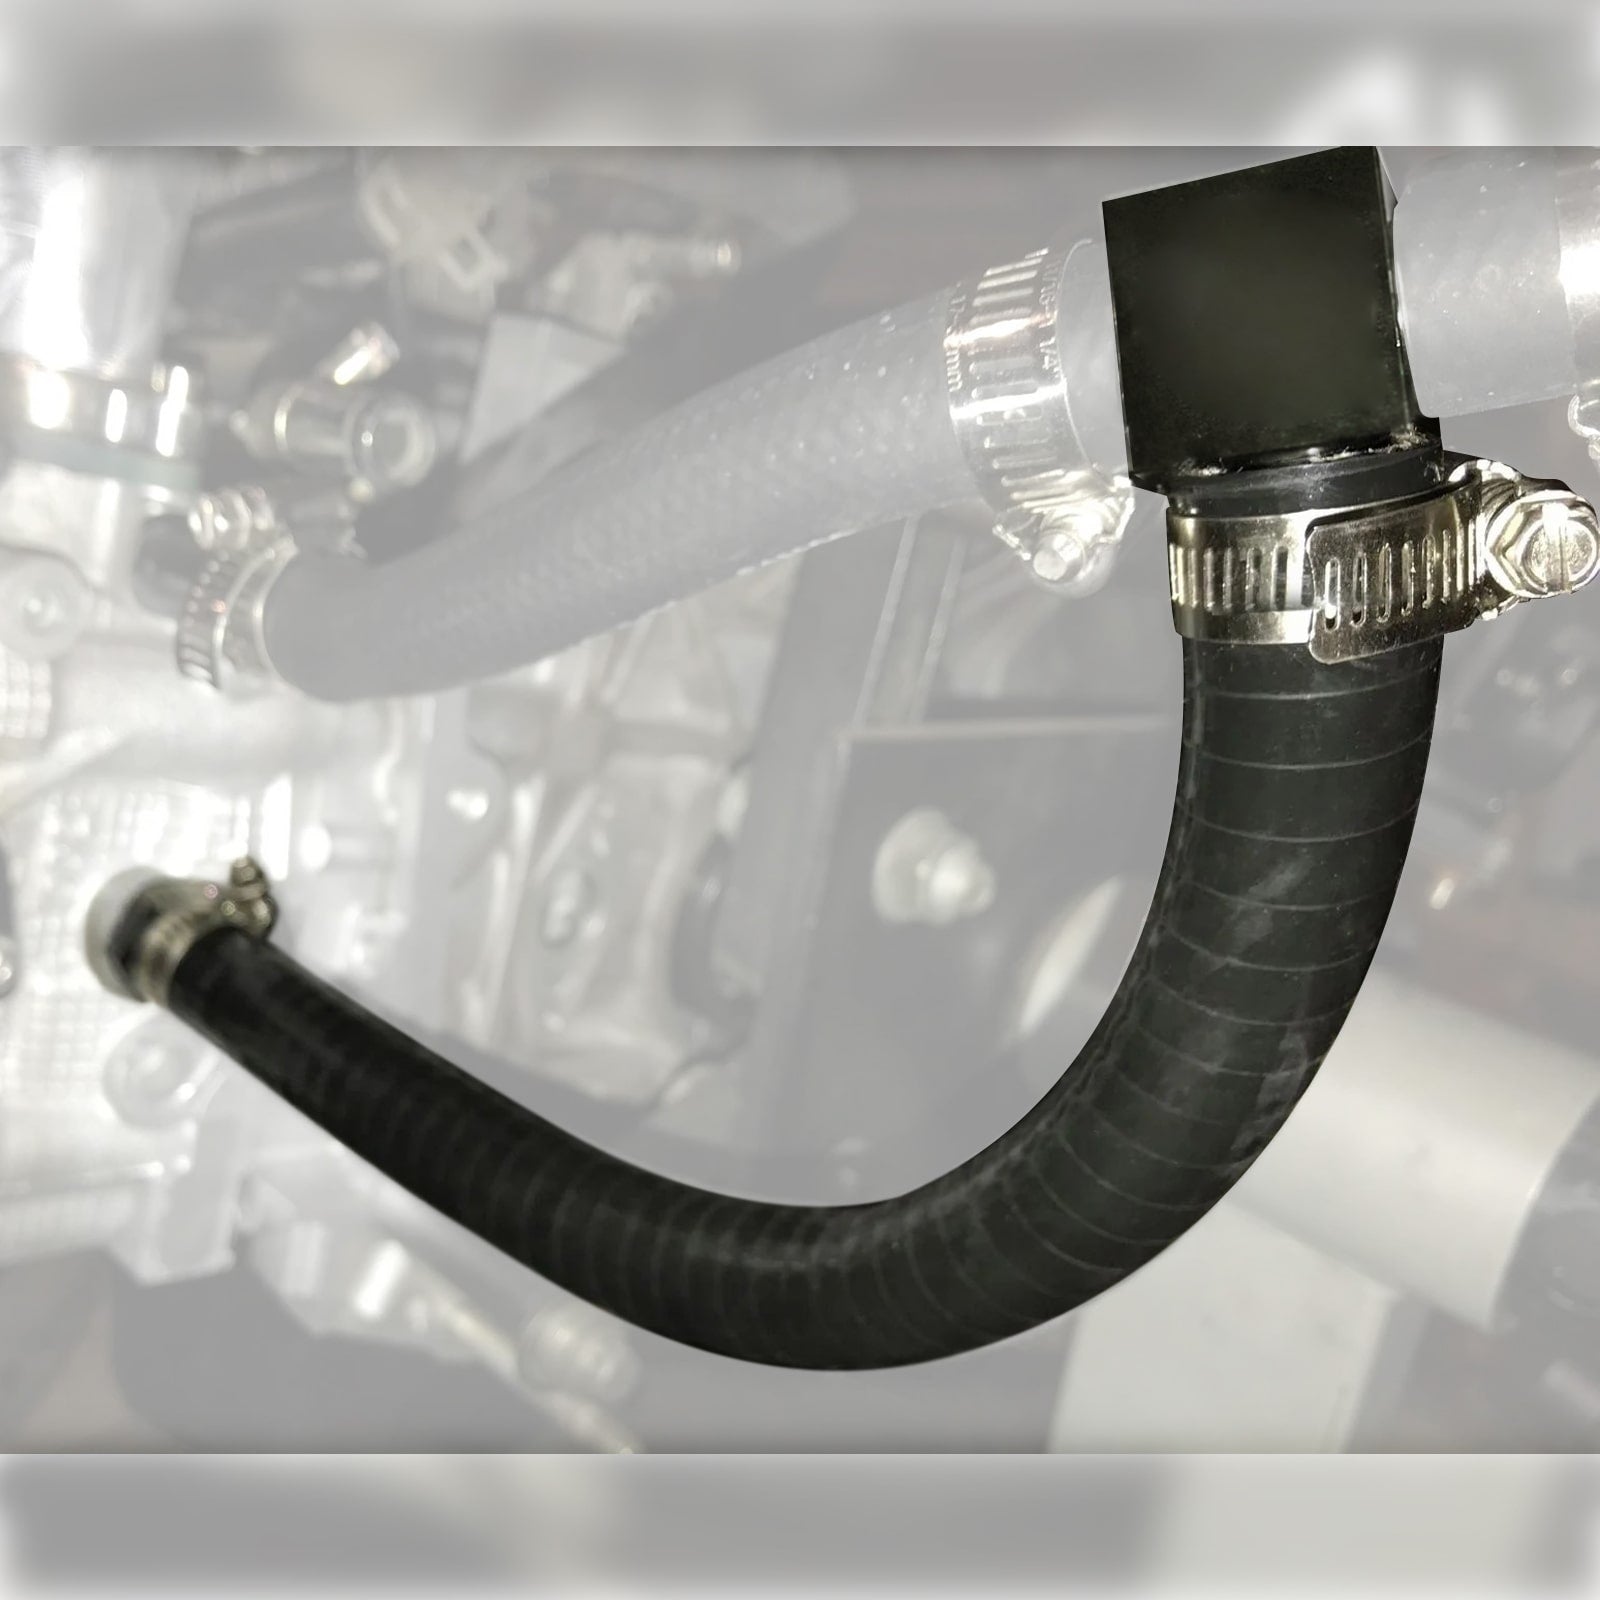 BEVINSEE Cylinder 4 Coolant Mod Cooling Mod Kit For Subaru EJ20 EJ25 Engines